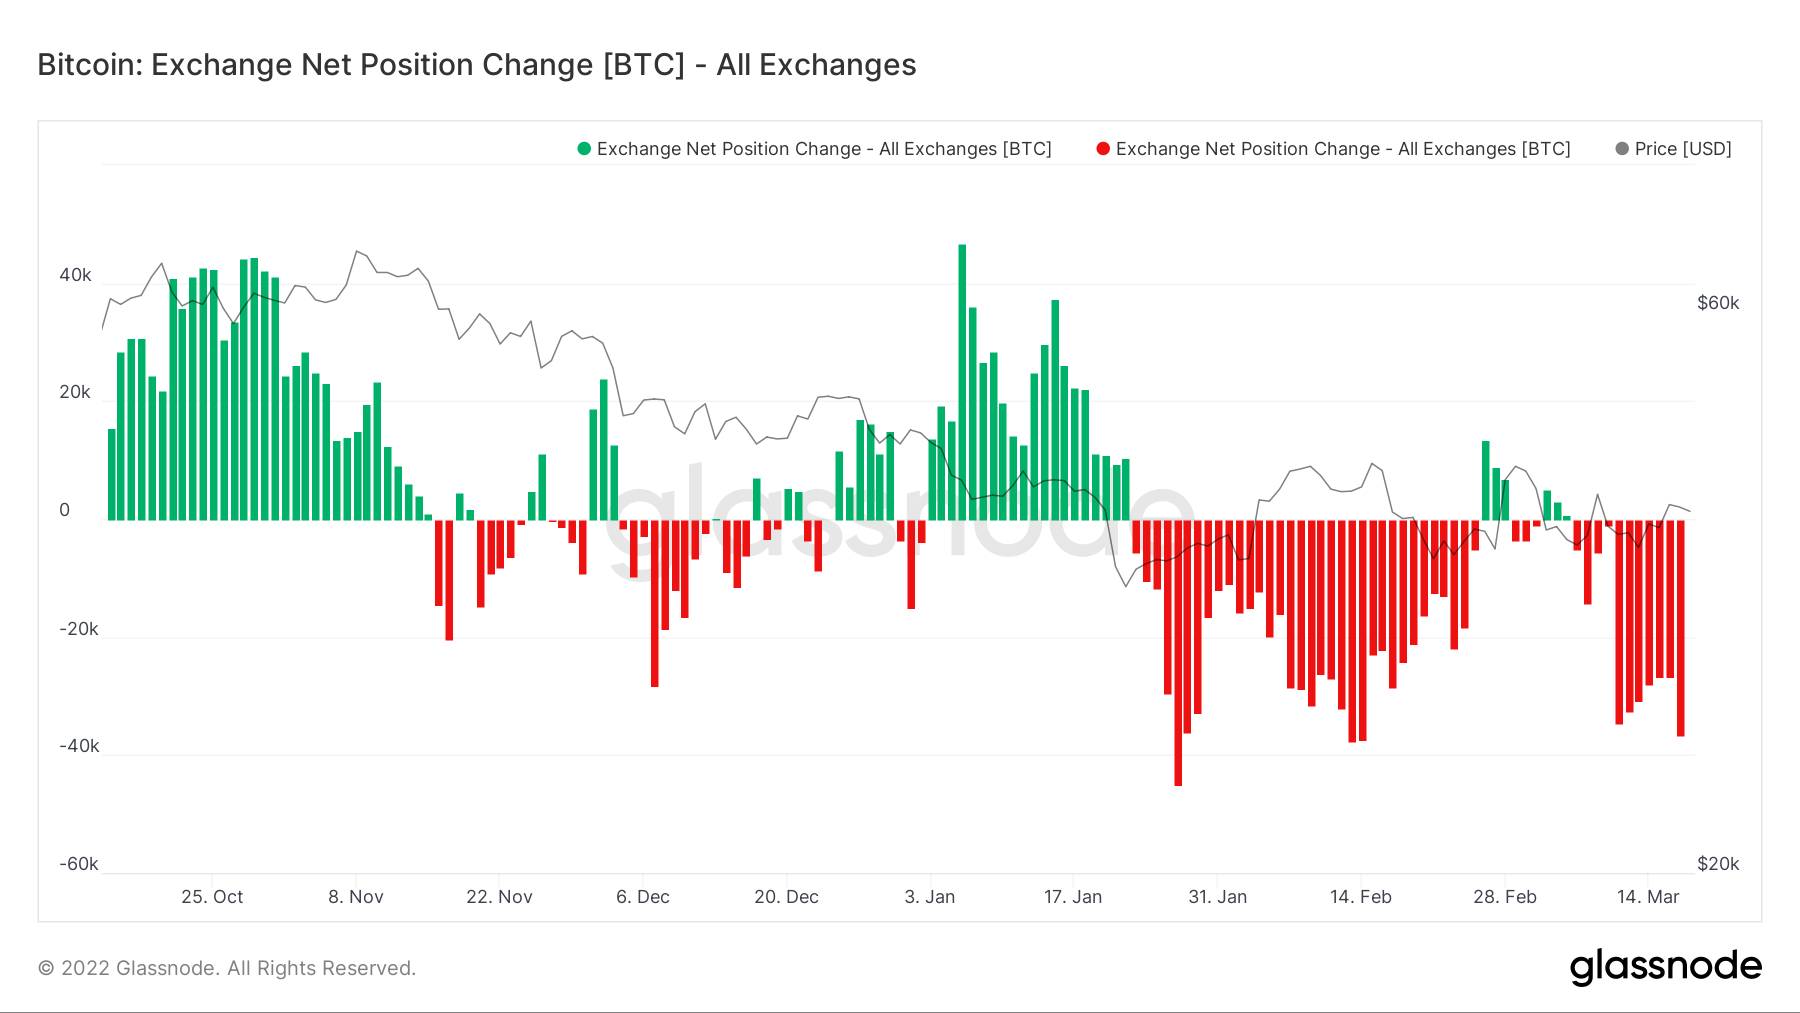 btc exchange net position